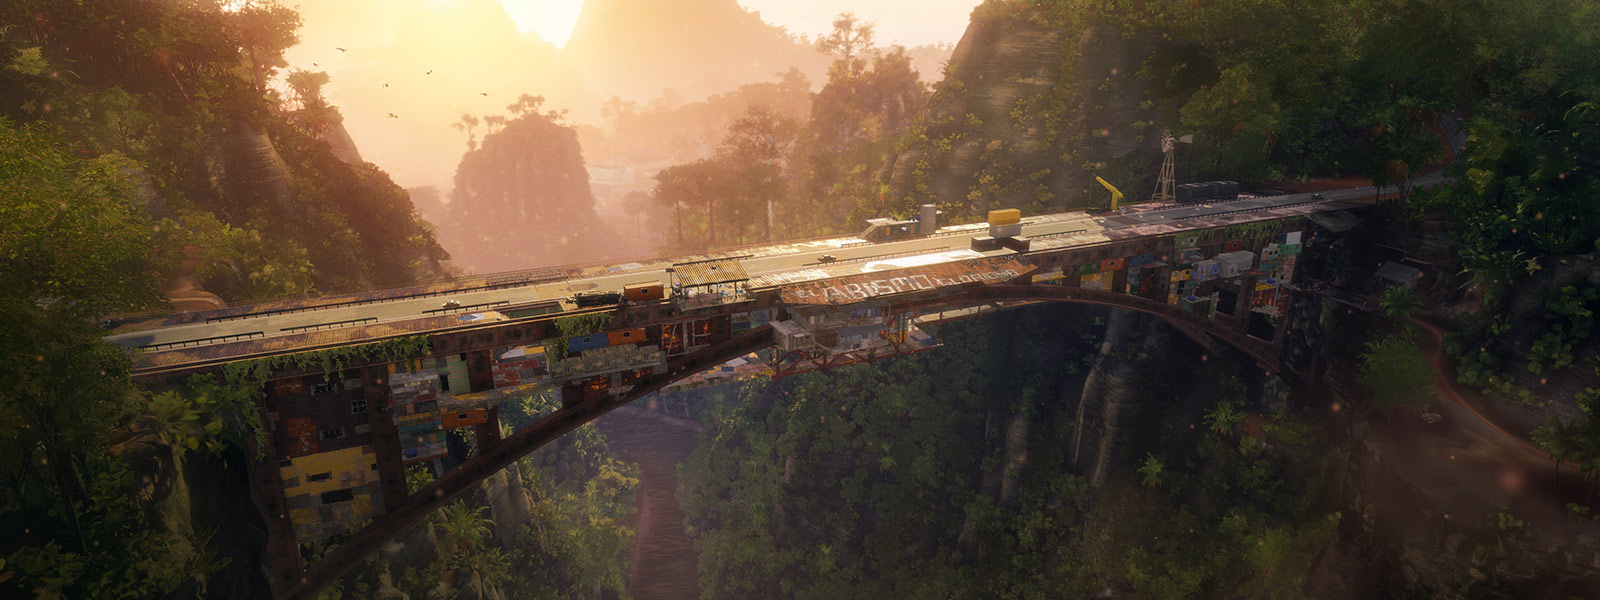 临时搭建的巨型大桥连接起热带雨林